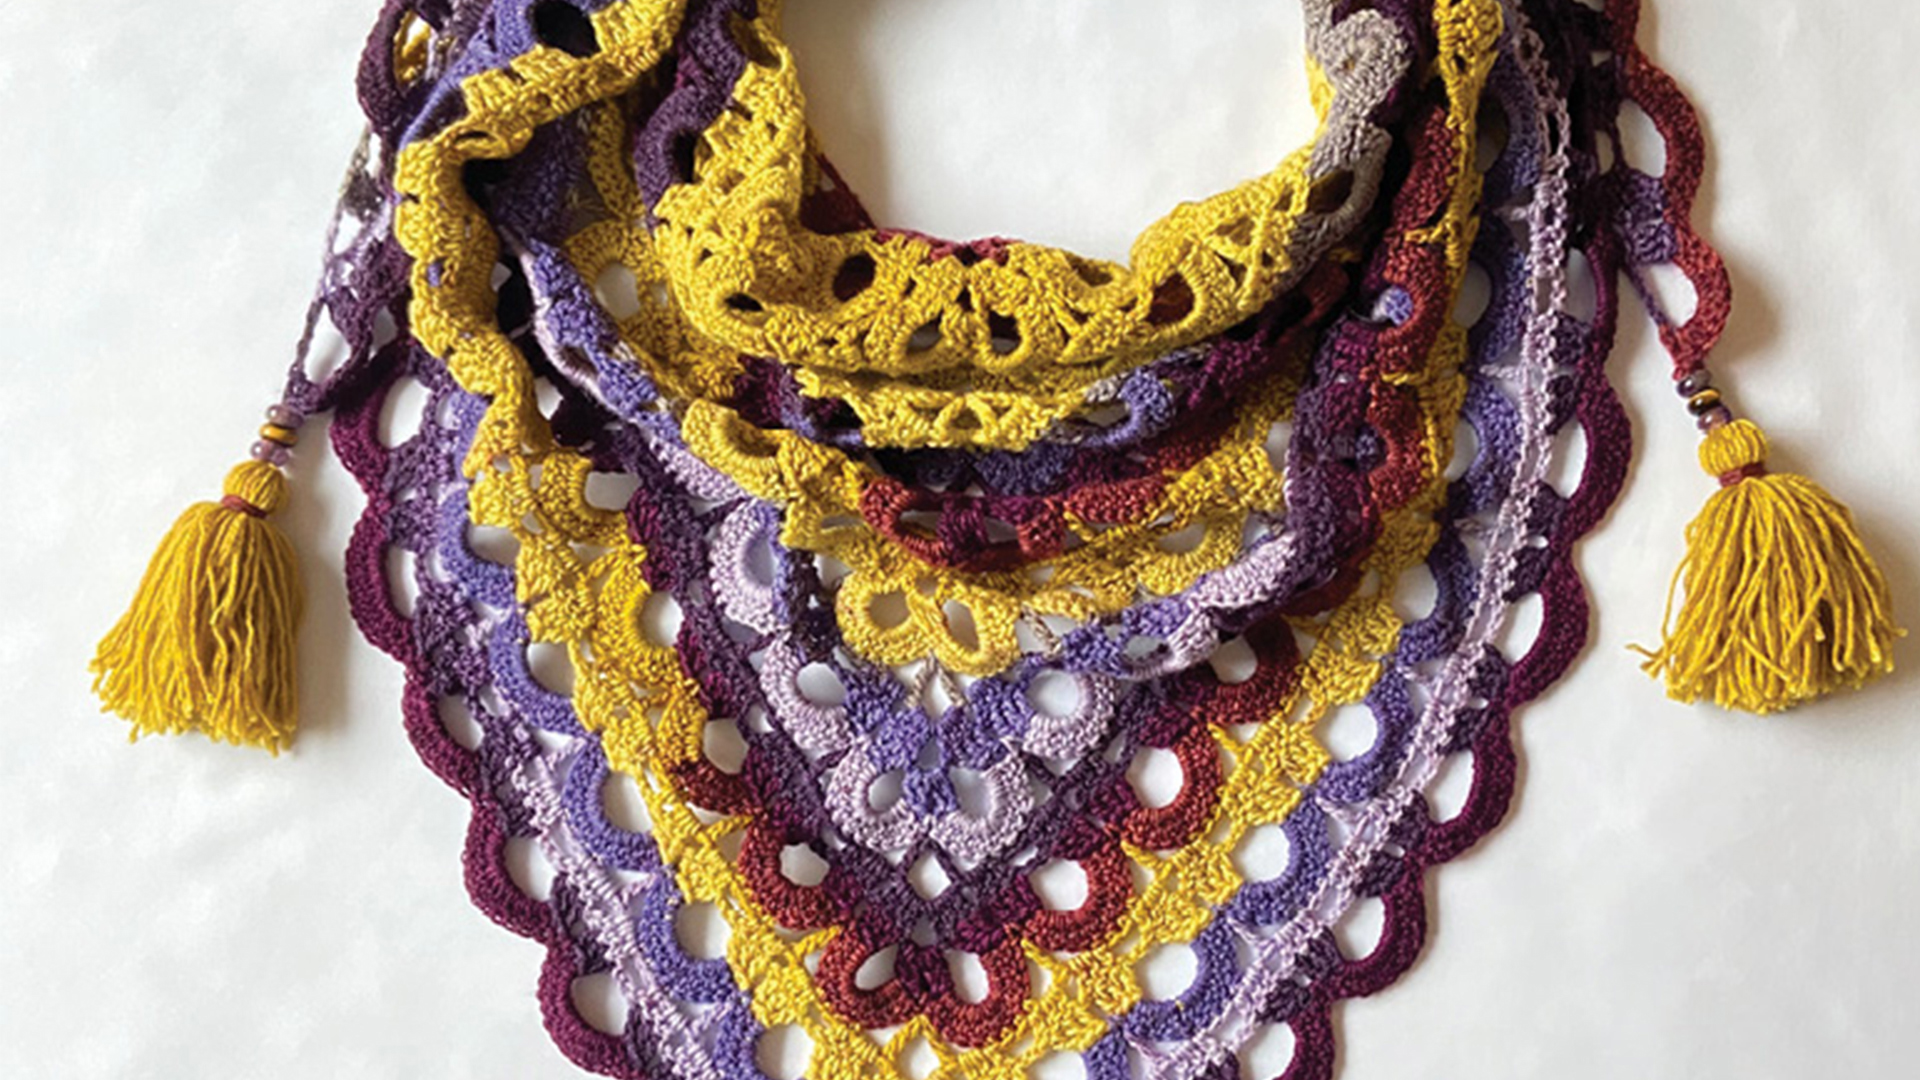 Free Crochet Pattern - Firedrake Lace Shawl